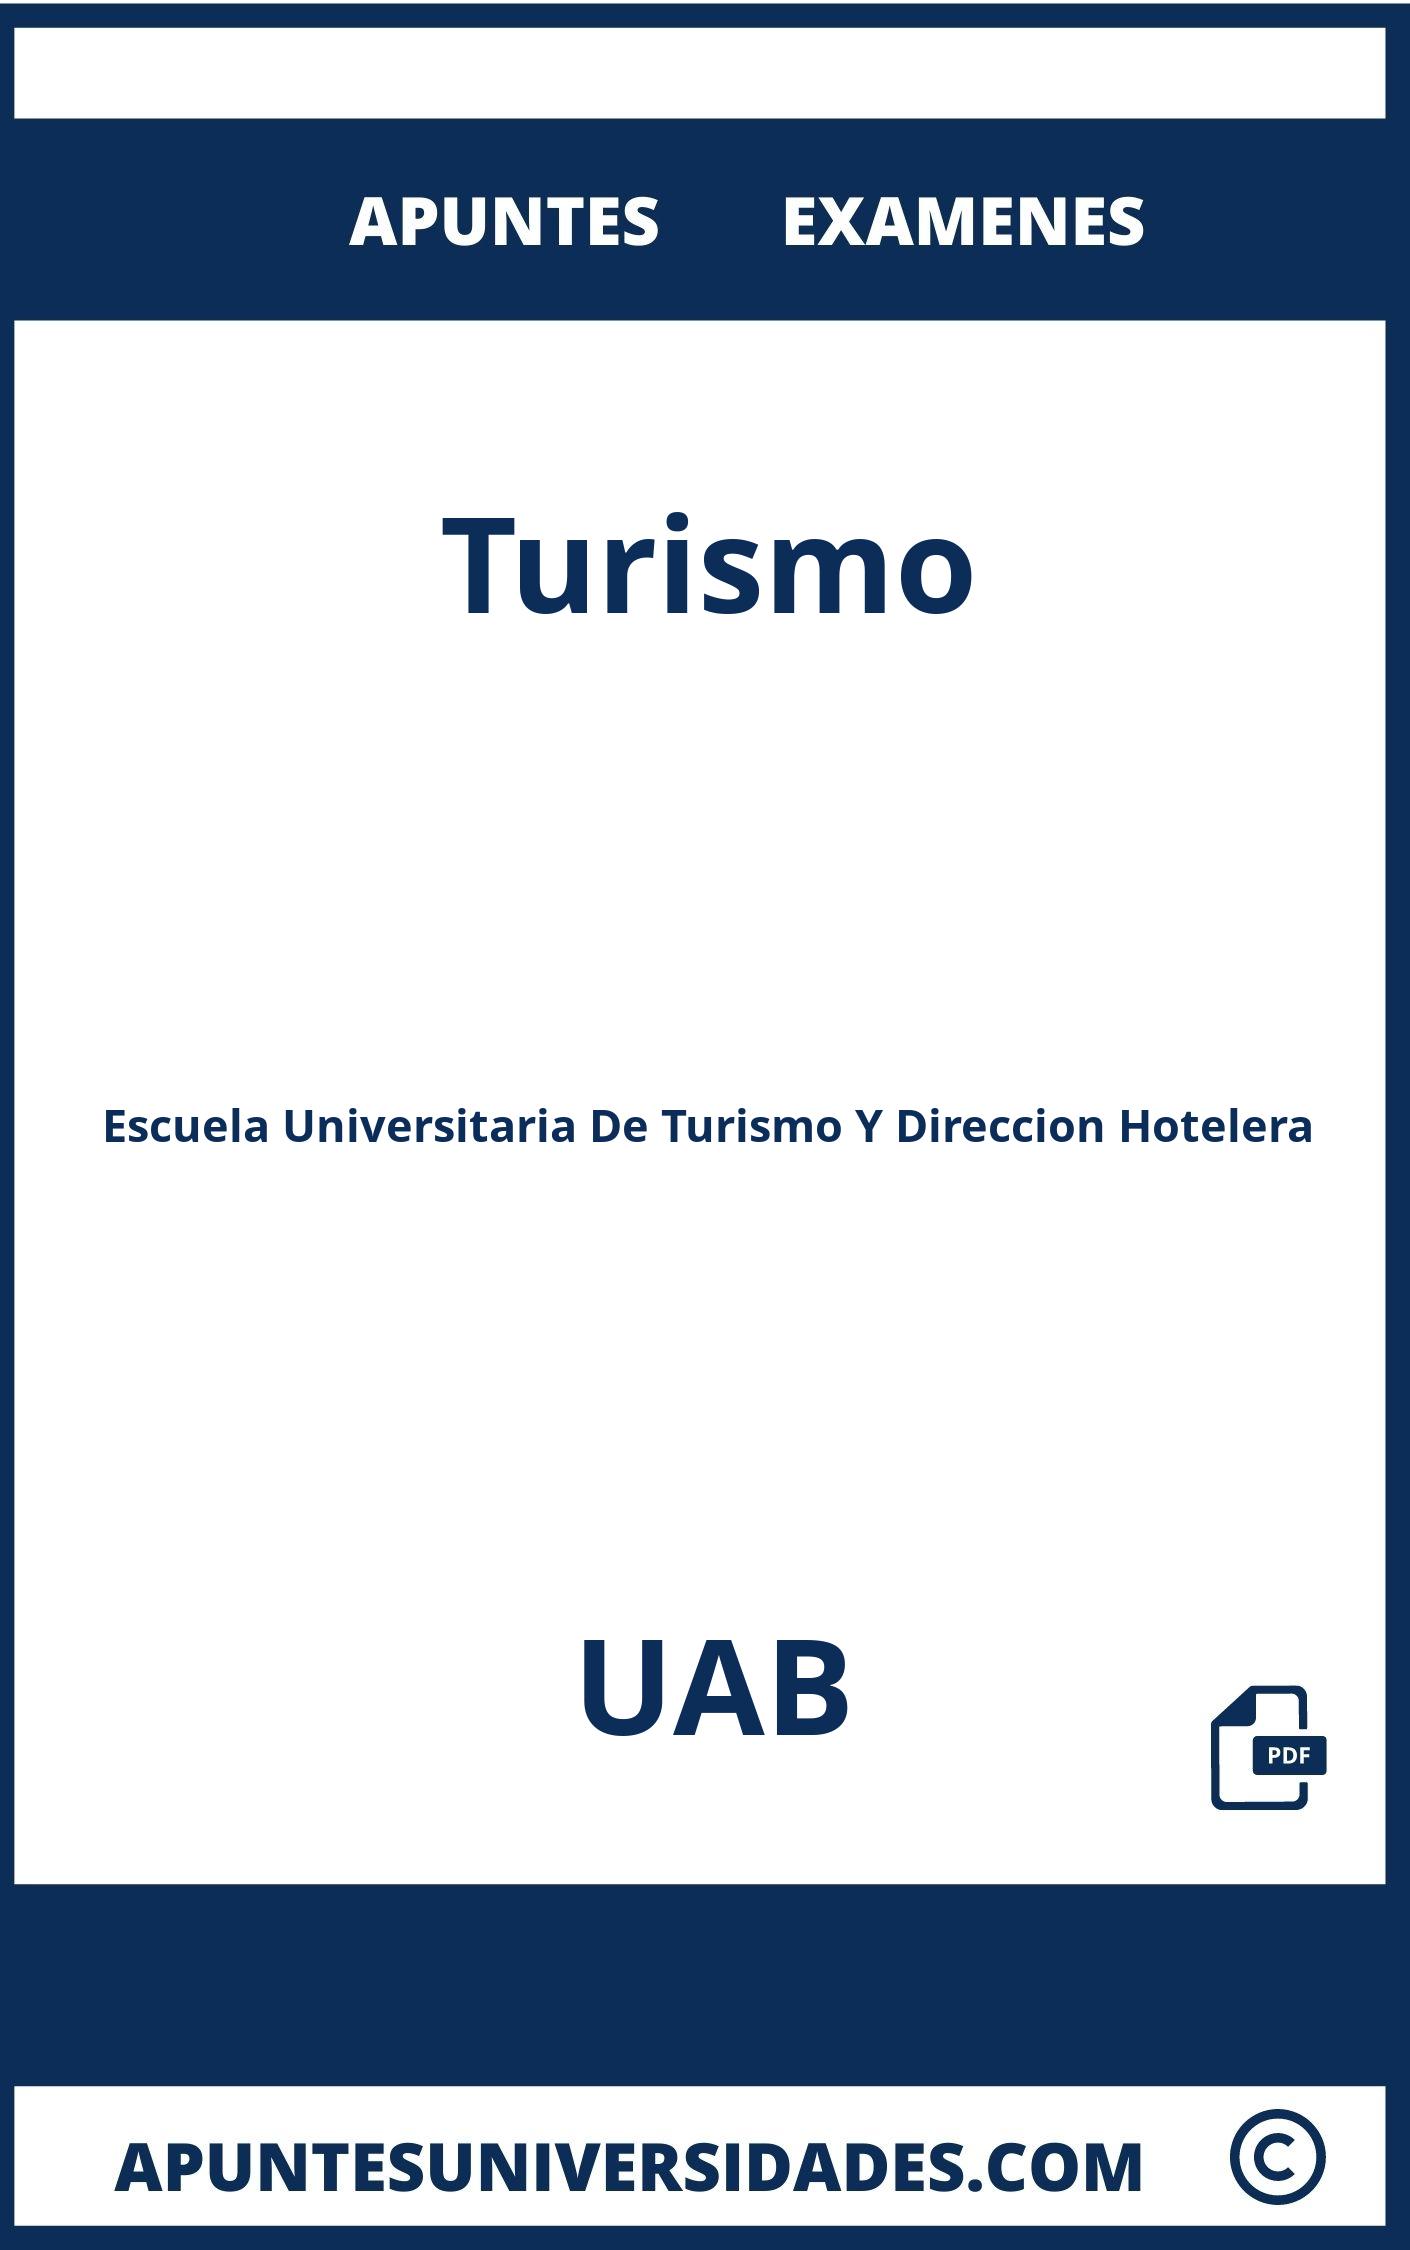 Apuntes y Examenes de Turismo UAB